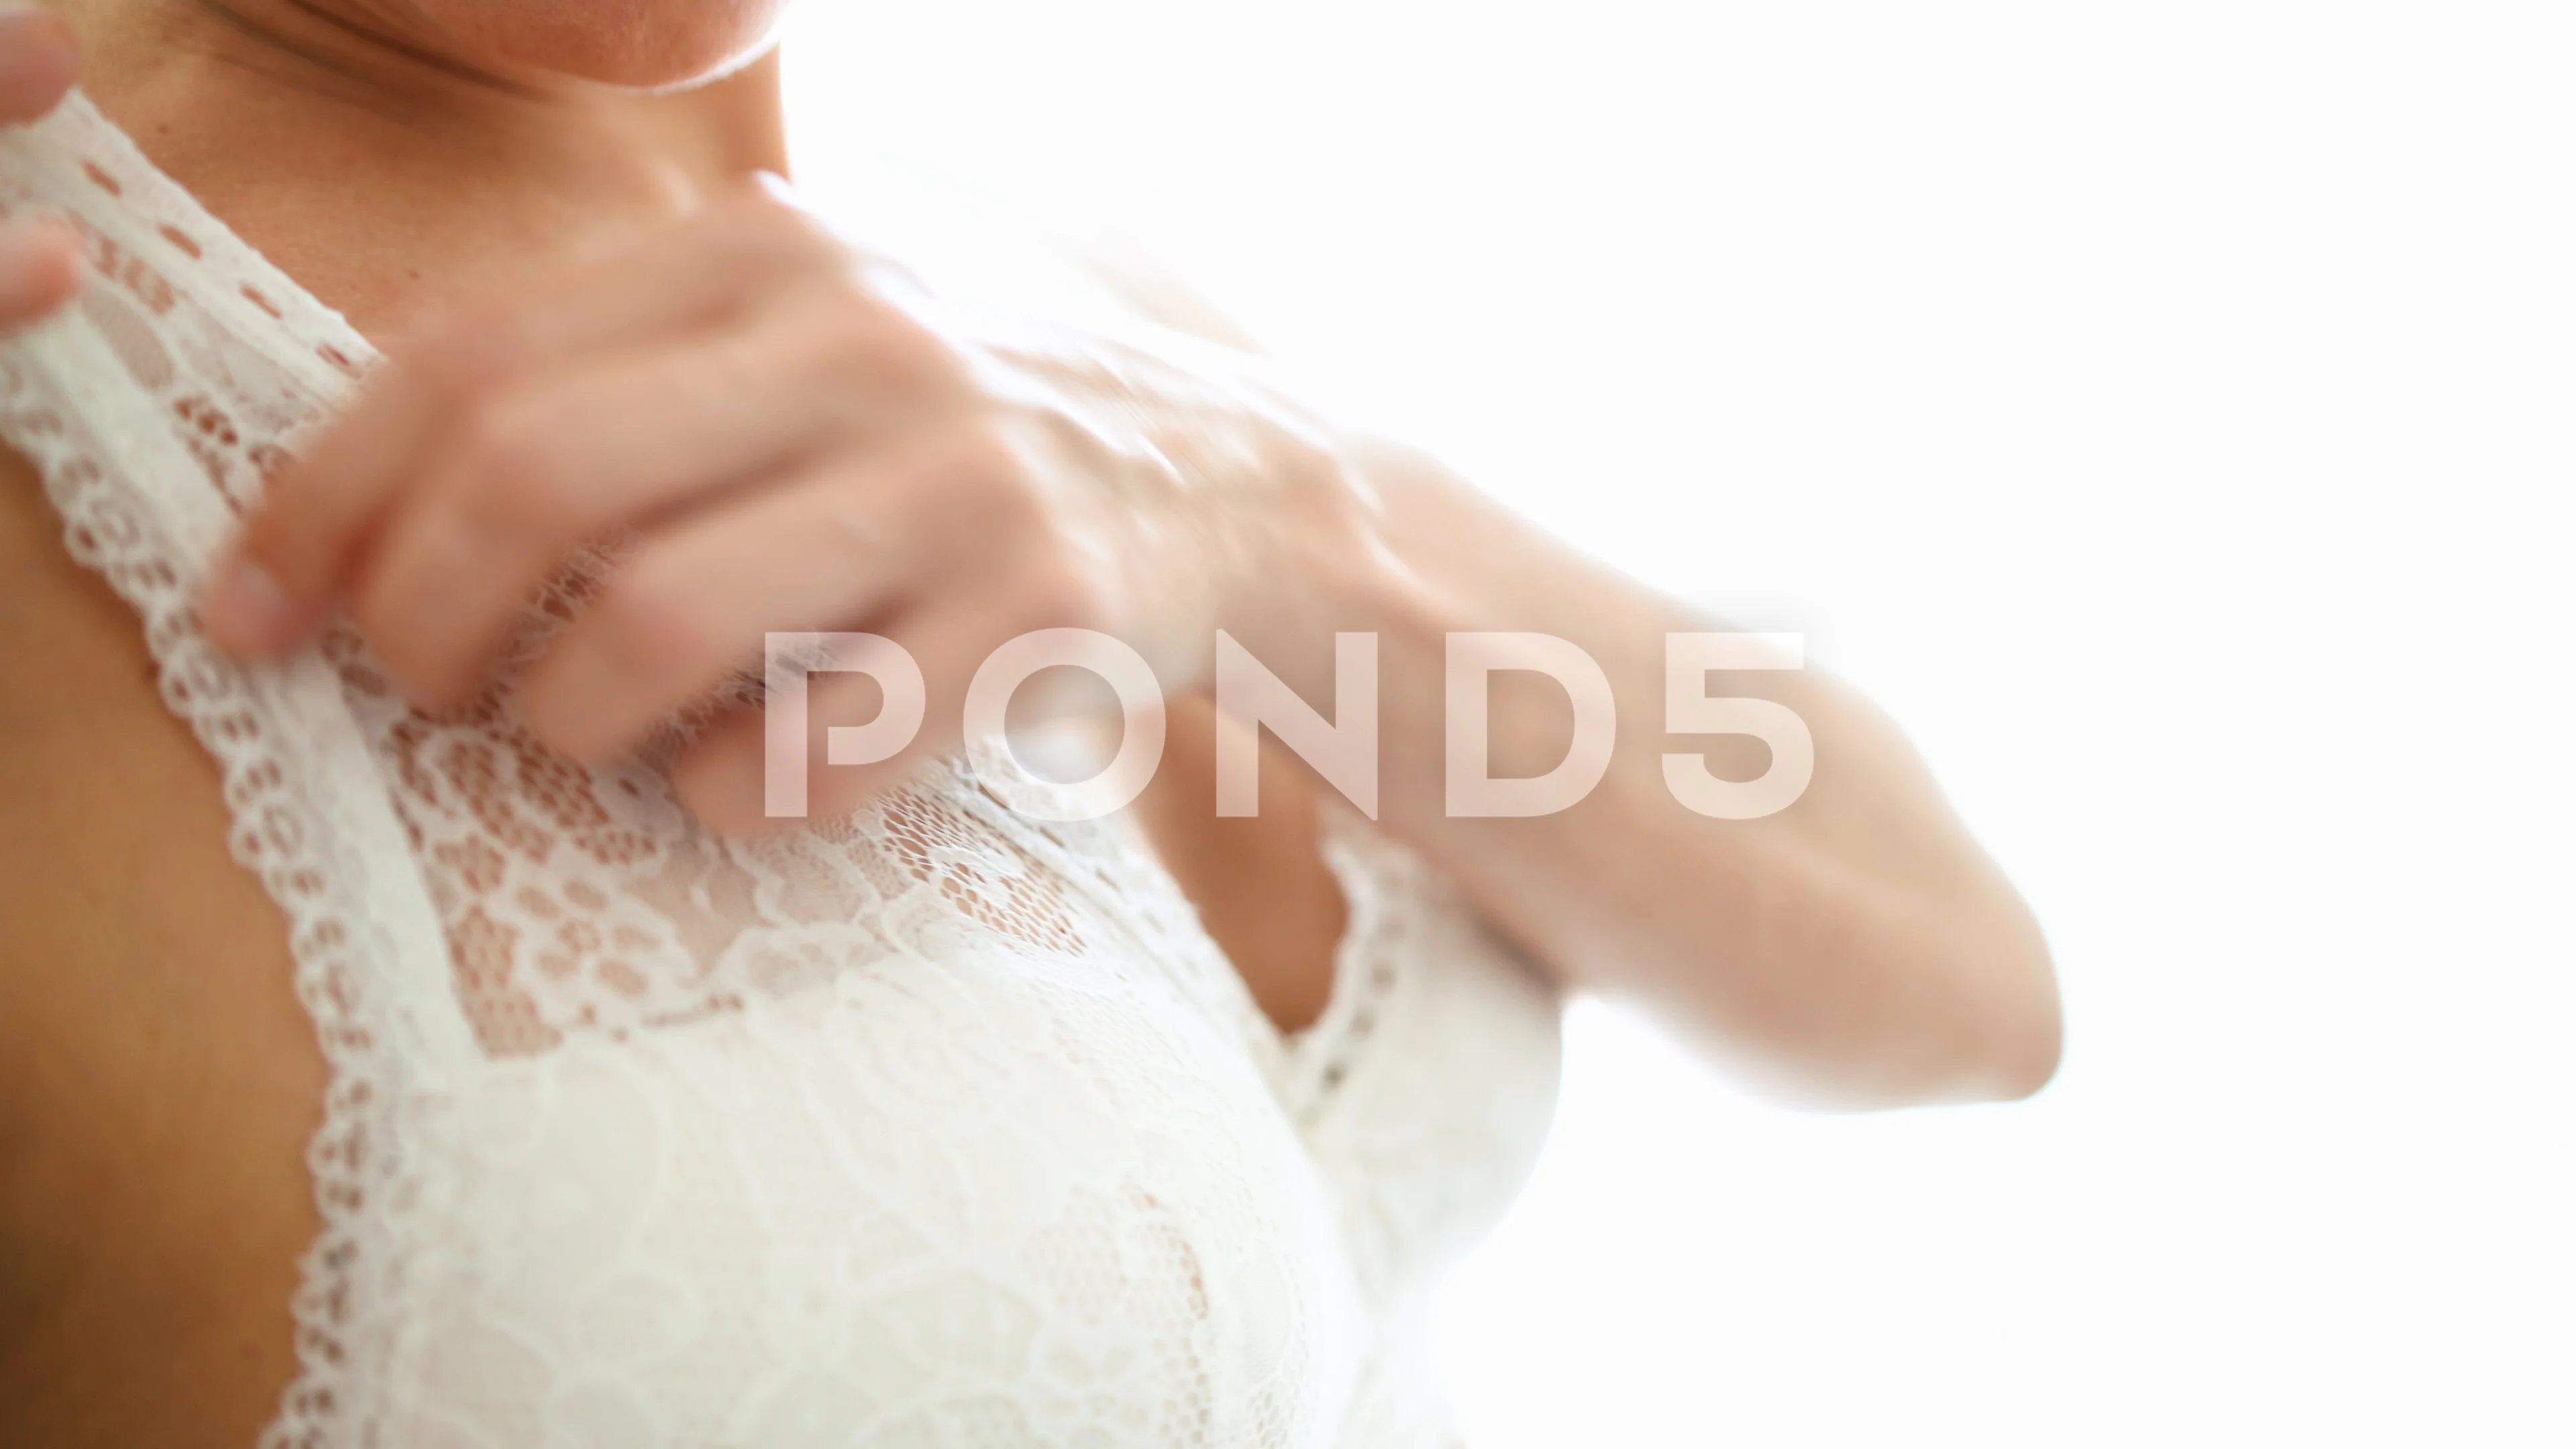 https://images.pond5.com/4k-woman-adjusting-her-bra-footage-111369054_prevstill.jpeg